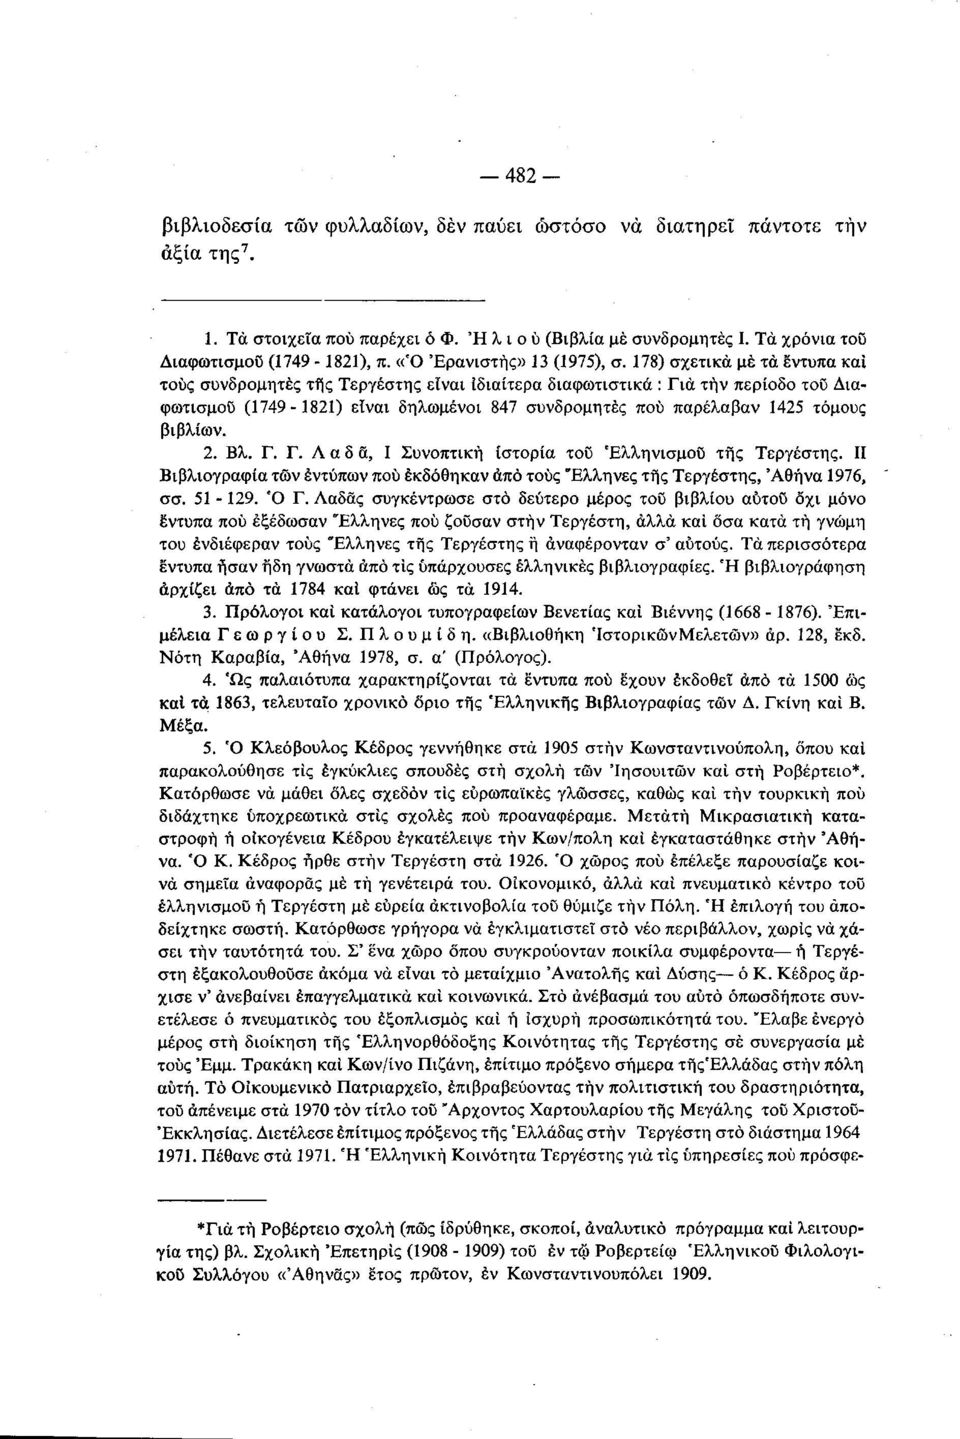 178) σχετικά μέ τα έντυπα καί τους συνδρομητές της Τεργέστης είναι ιδιαίτερα διαφωτιστικά : Για την περίοδο του Διαφωτισμού (1749 1821) είναι δηλωμένοι 847 συνδρομητές πού παρέλαβαν 1425 τόμους